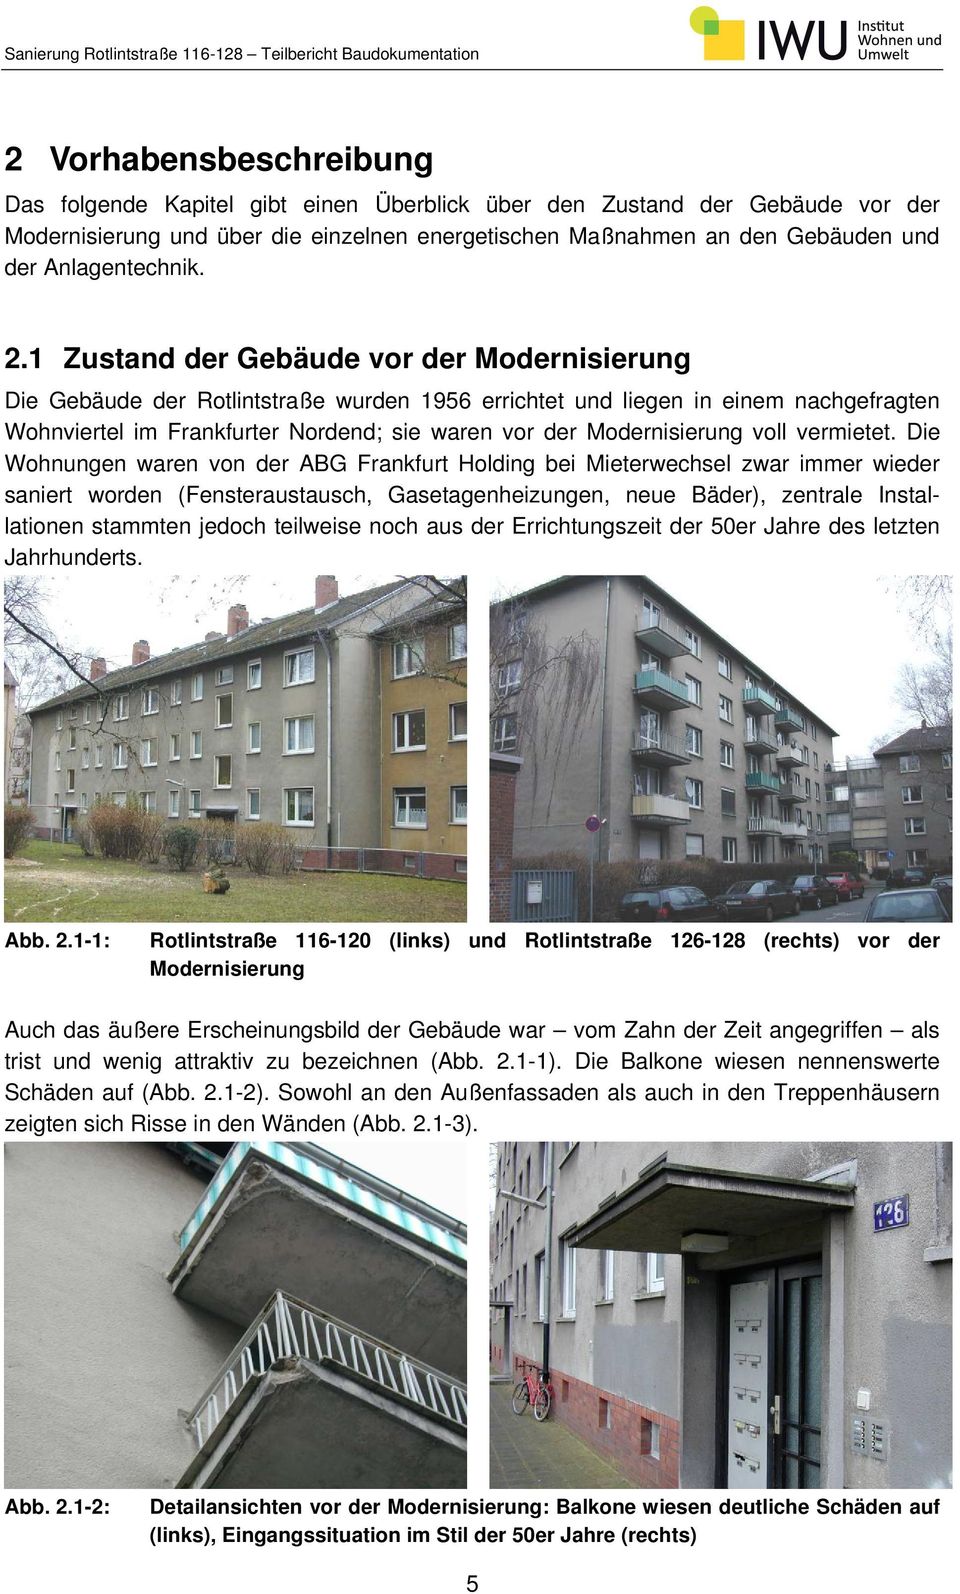 1 Zustand der Gebäude vor der Modernisierung Die Gebäude der Rotlintstraße wurden 1956 errichtet und liegen in einem nachgefragten Wohnviertel im Frankfurter Nordend; sie waren vor der Modernisierung